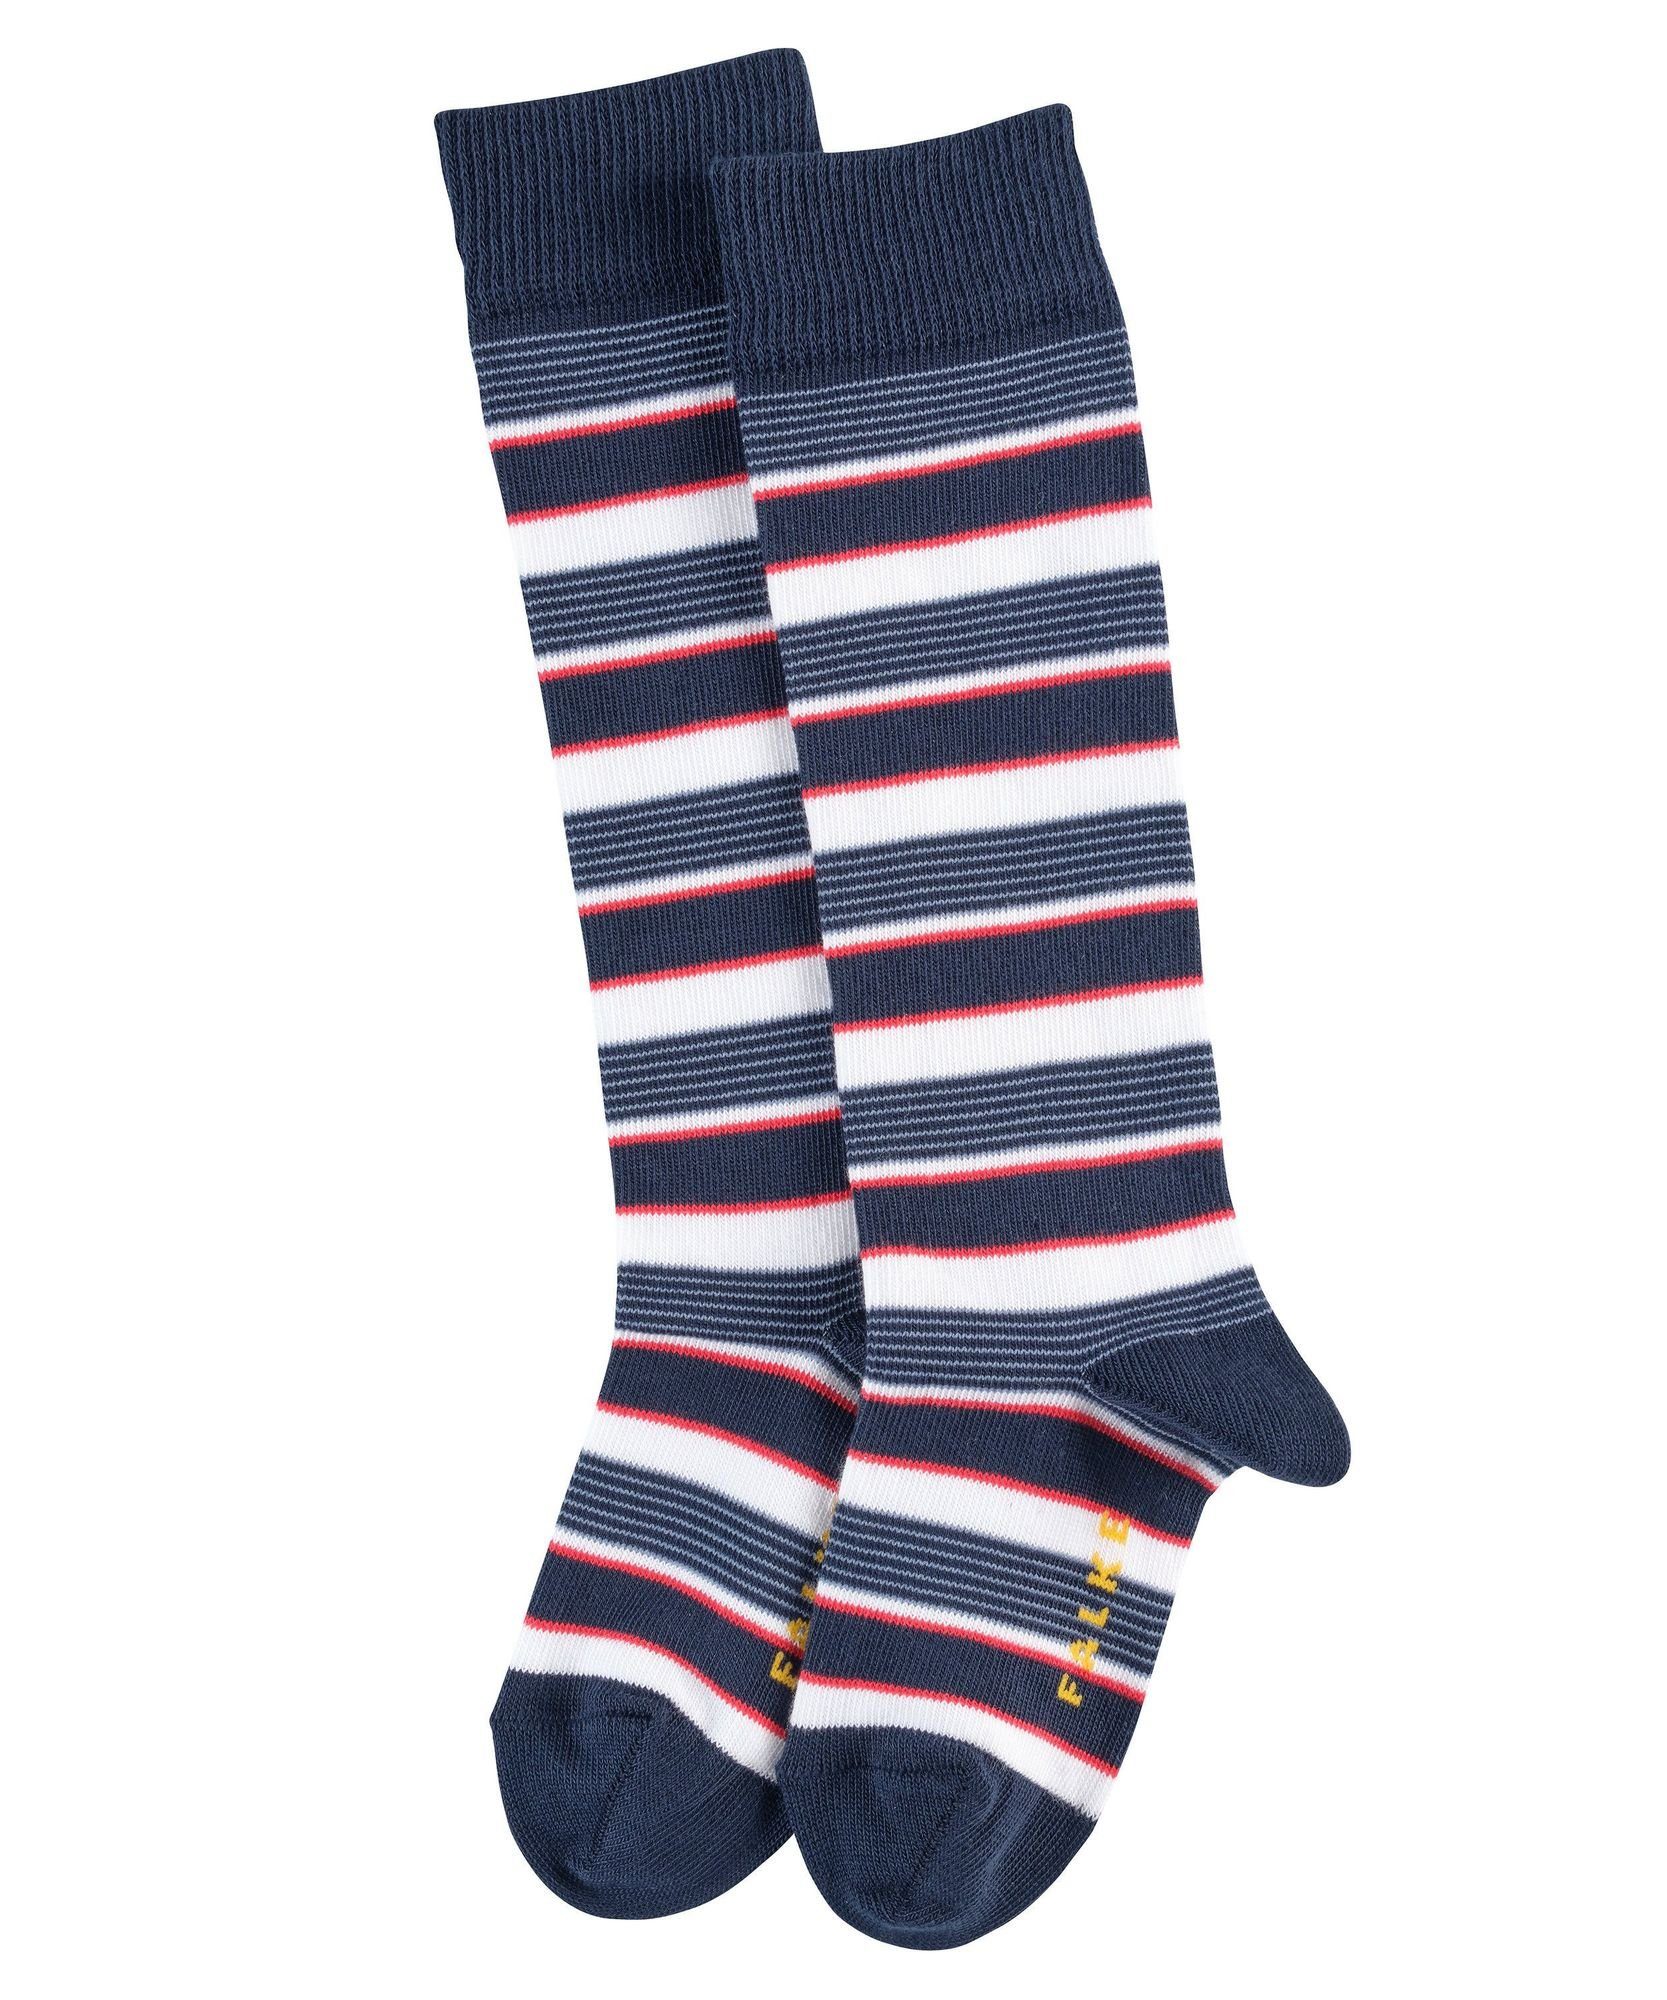 FALKE Socken FALKE Mixed 2 Kniestrümpfe Kinder marine Stripe